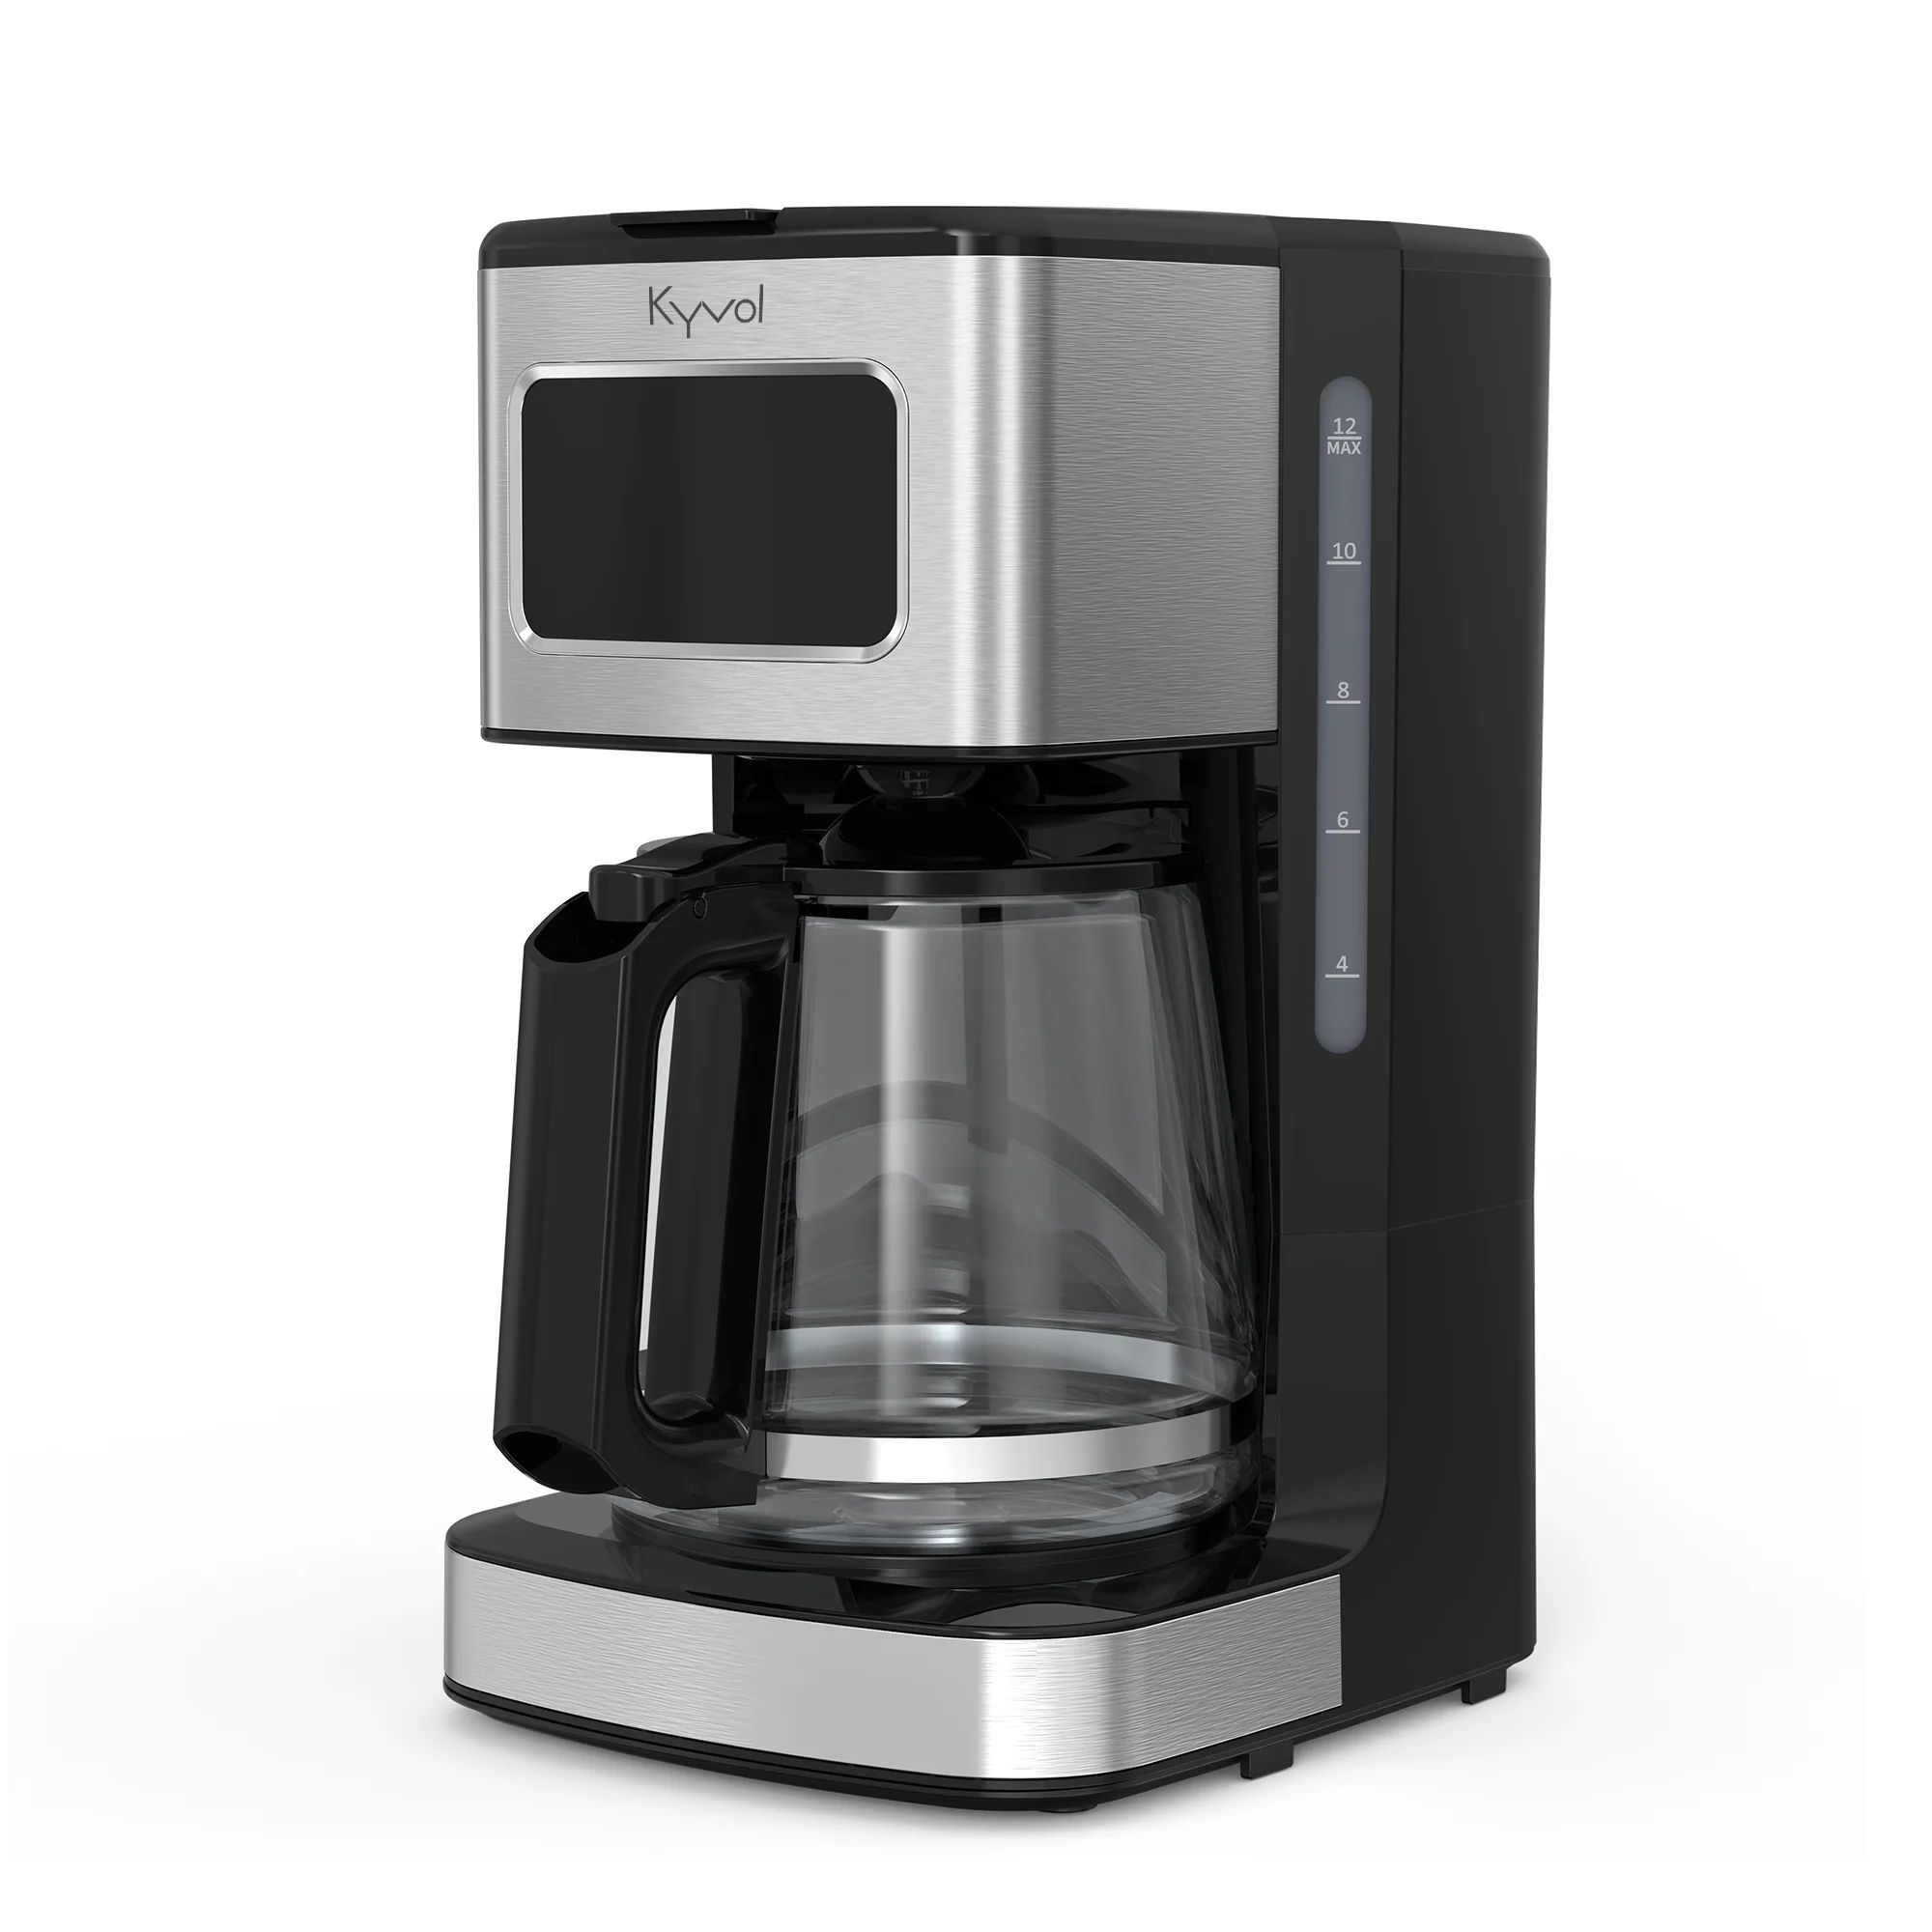 Кофеварка Kyvol Best Value Coffee Maker CM05 CM-DM121A цена и фото